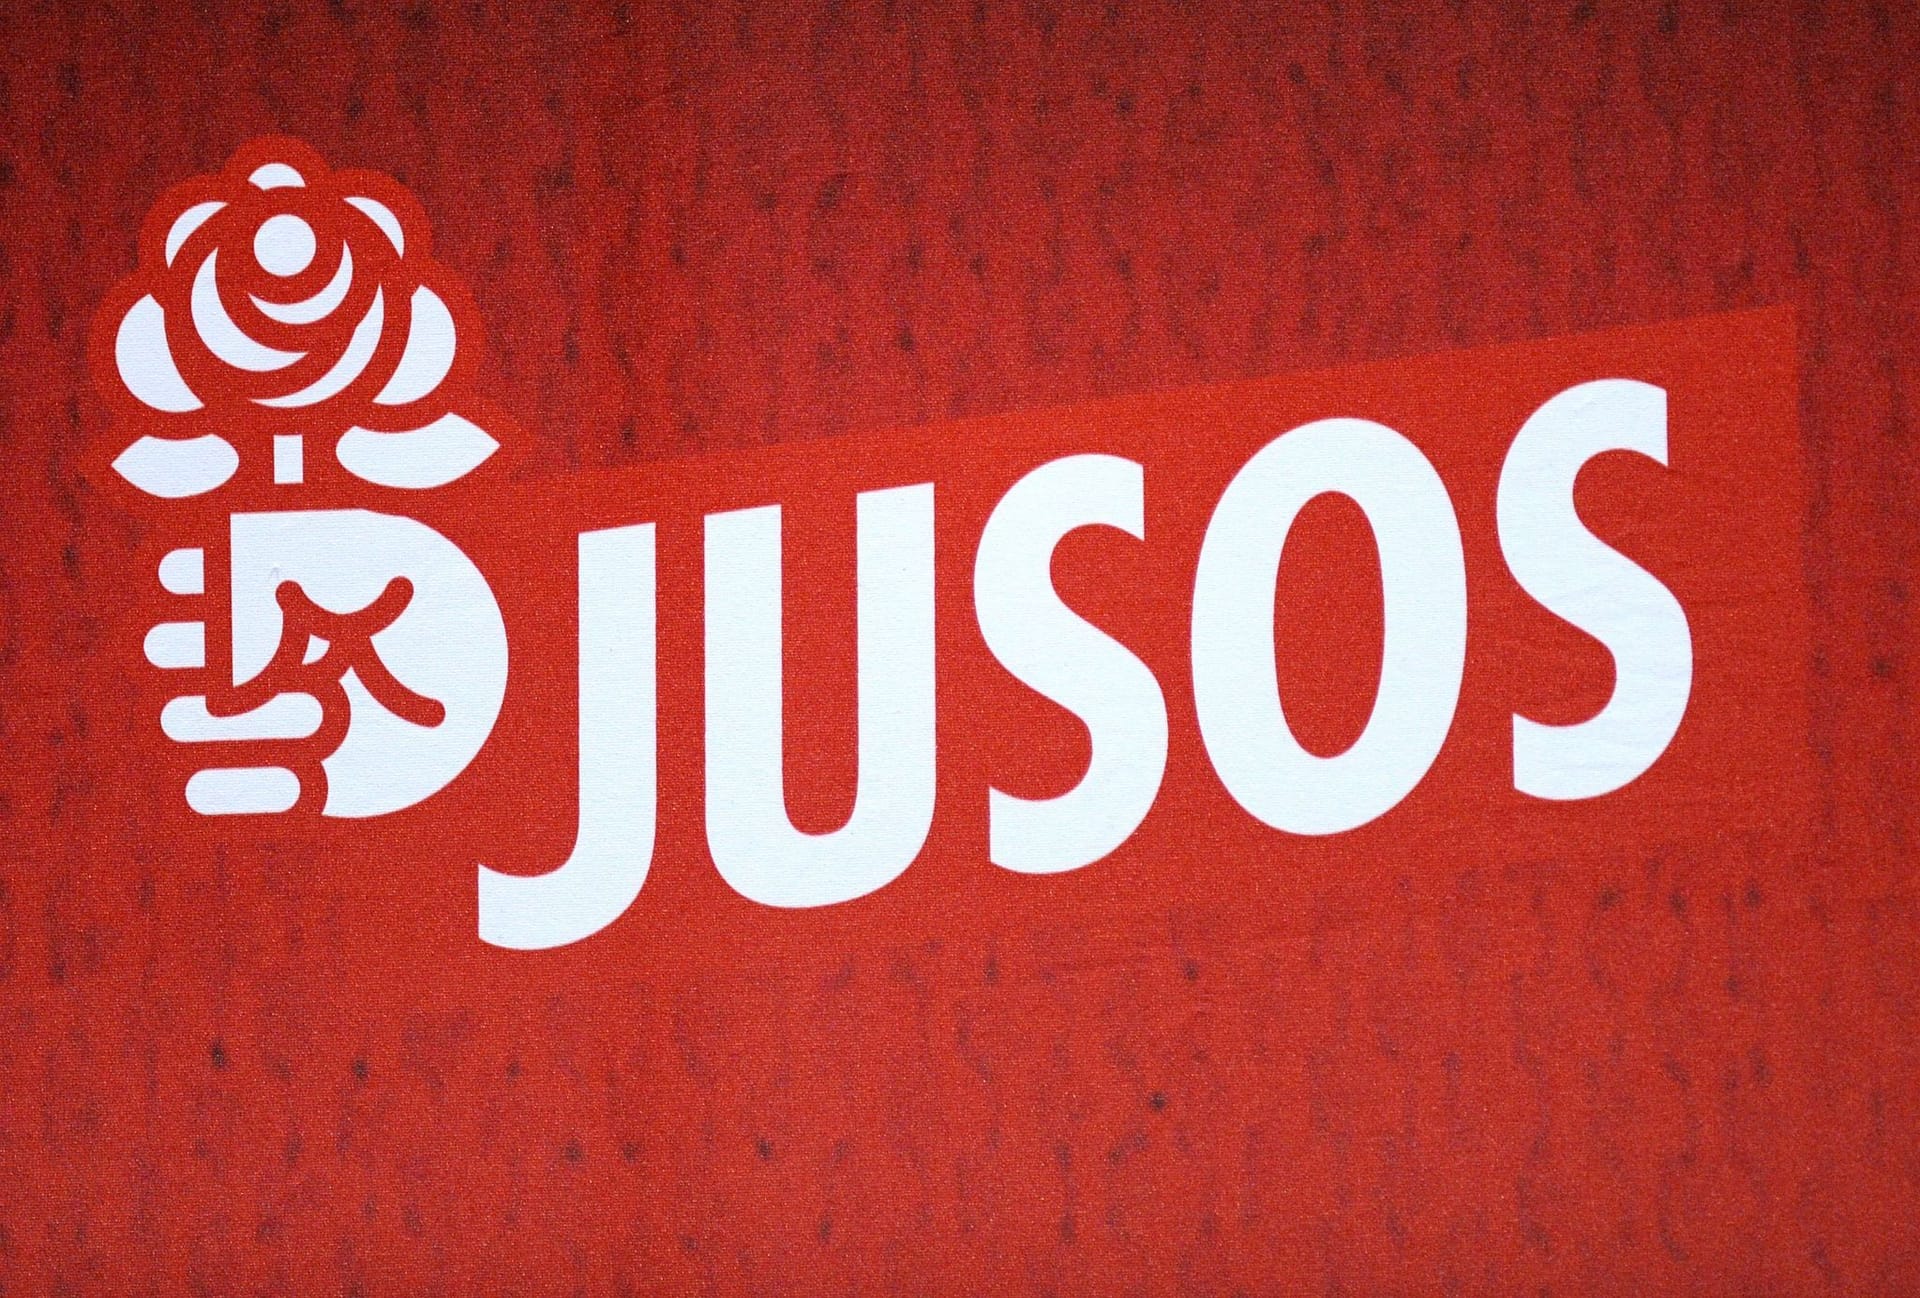 Jusos-Logo